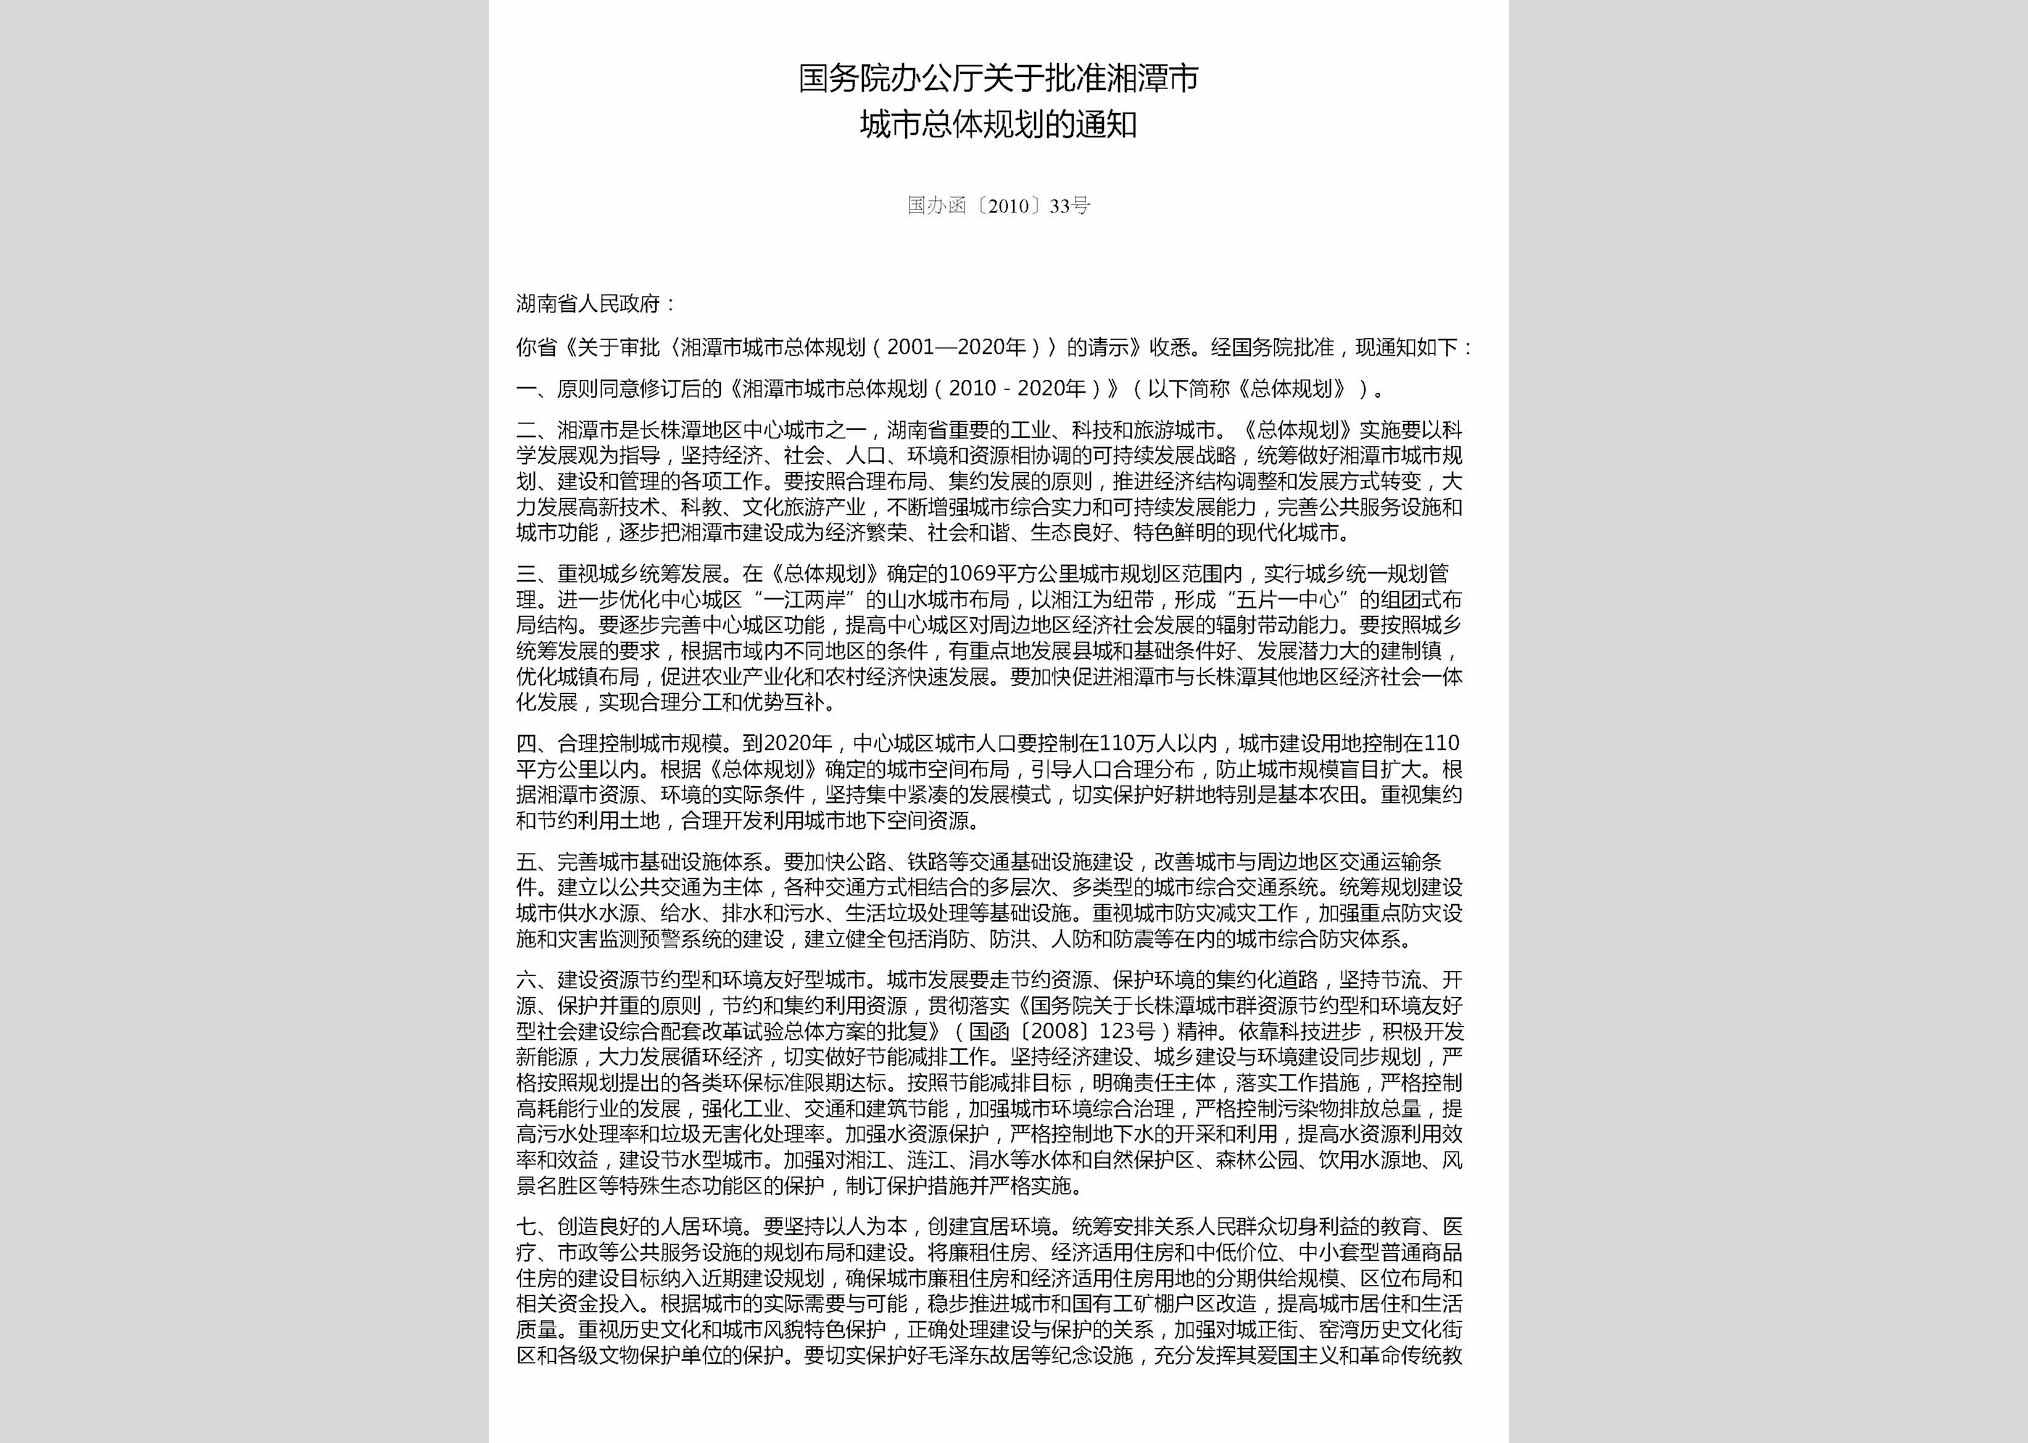 国办函[2010]33号：国务院办公厅关于批准湘潭市城市总体规划的通知